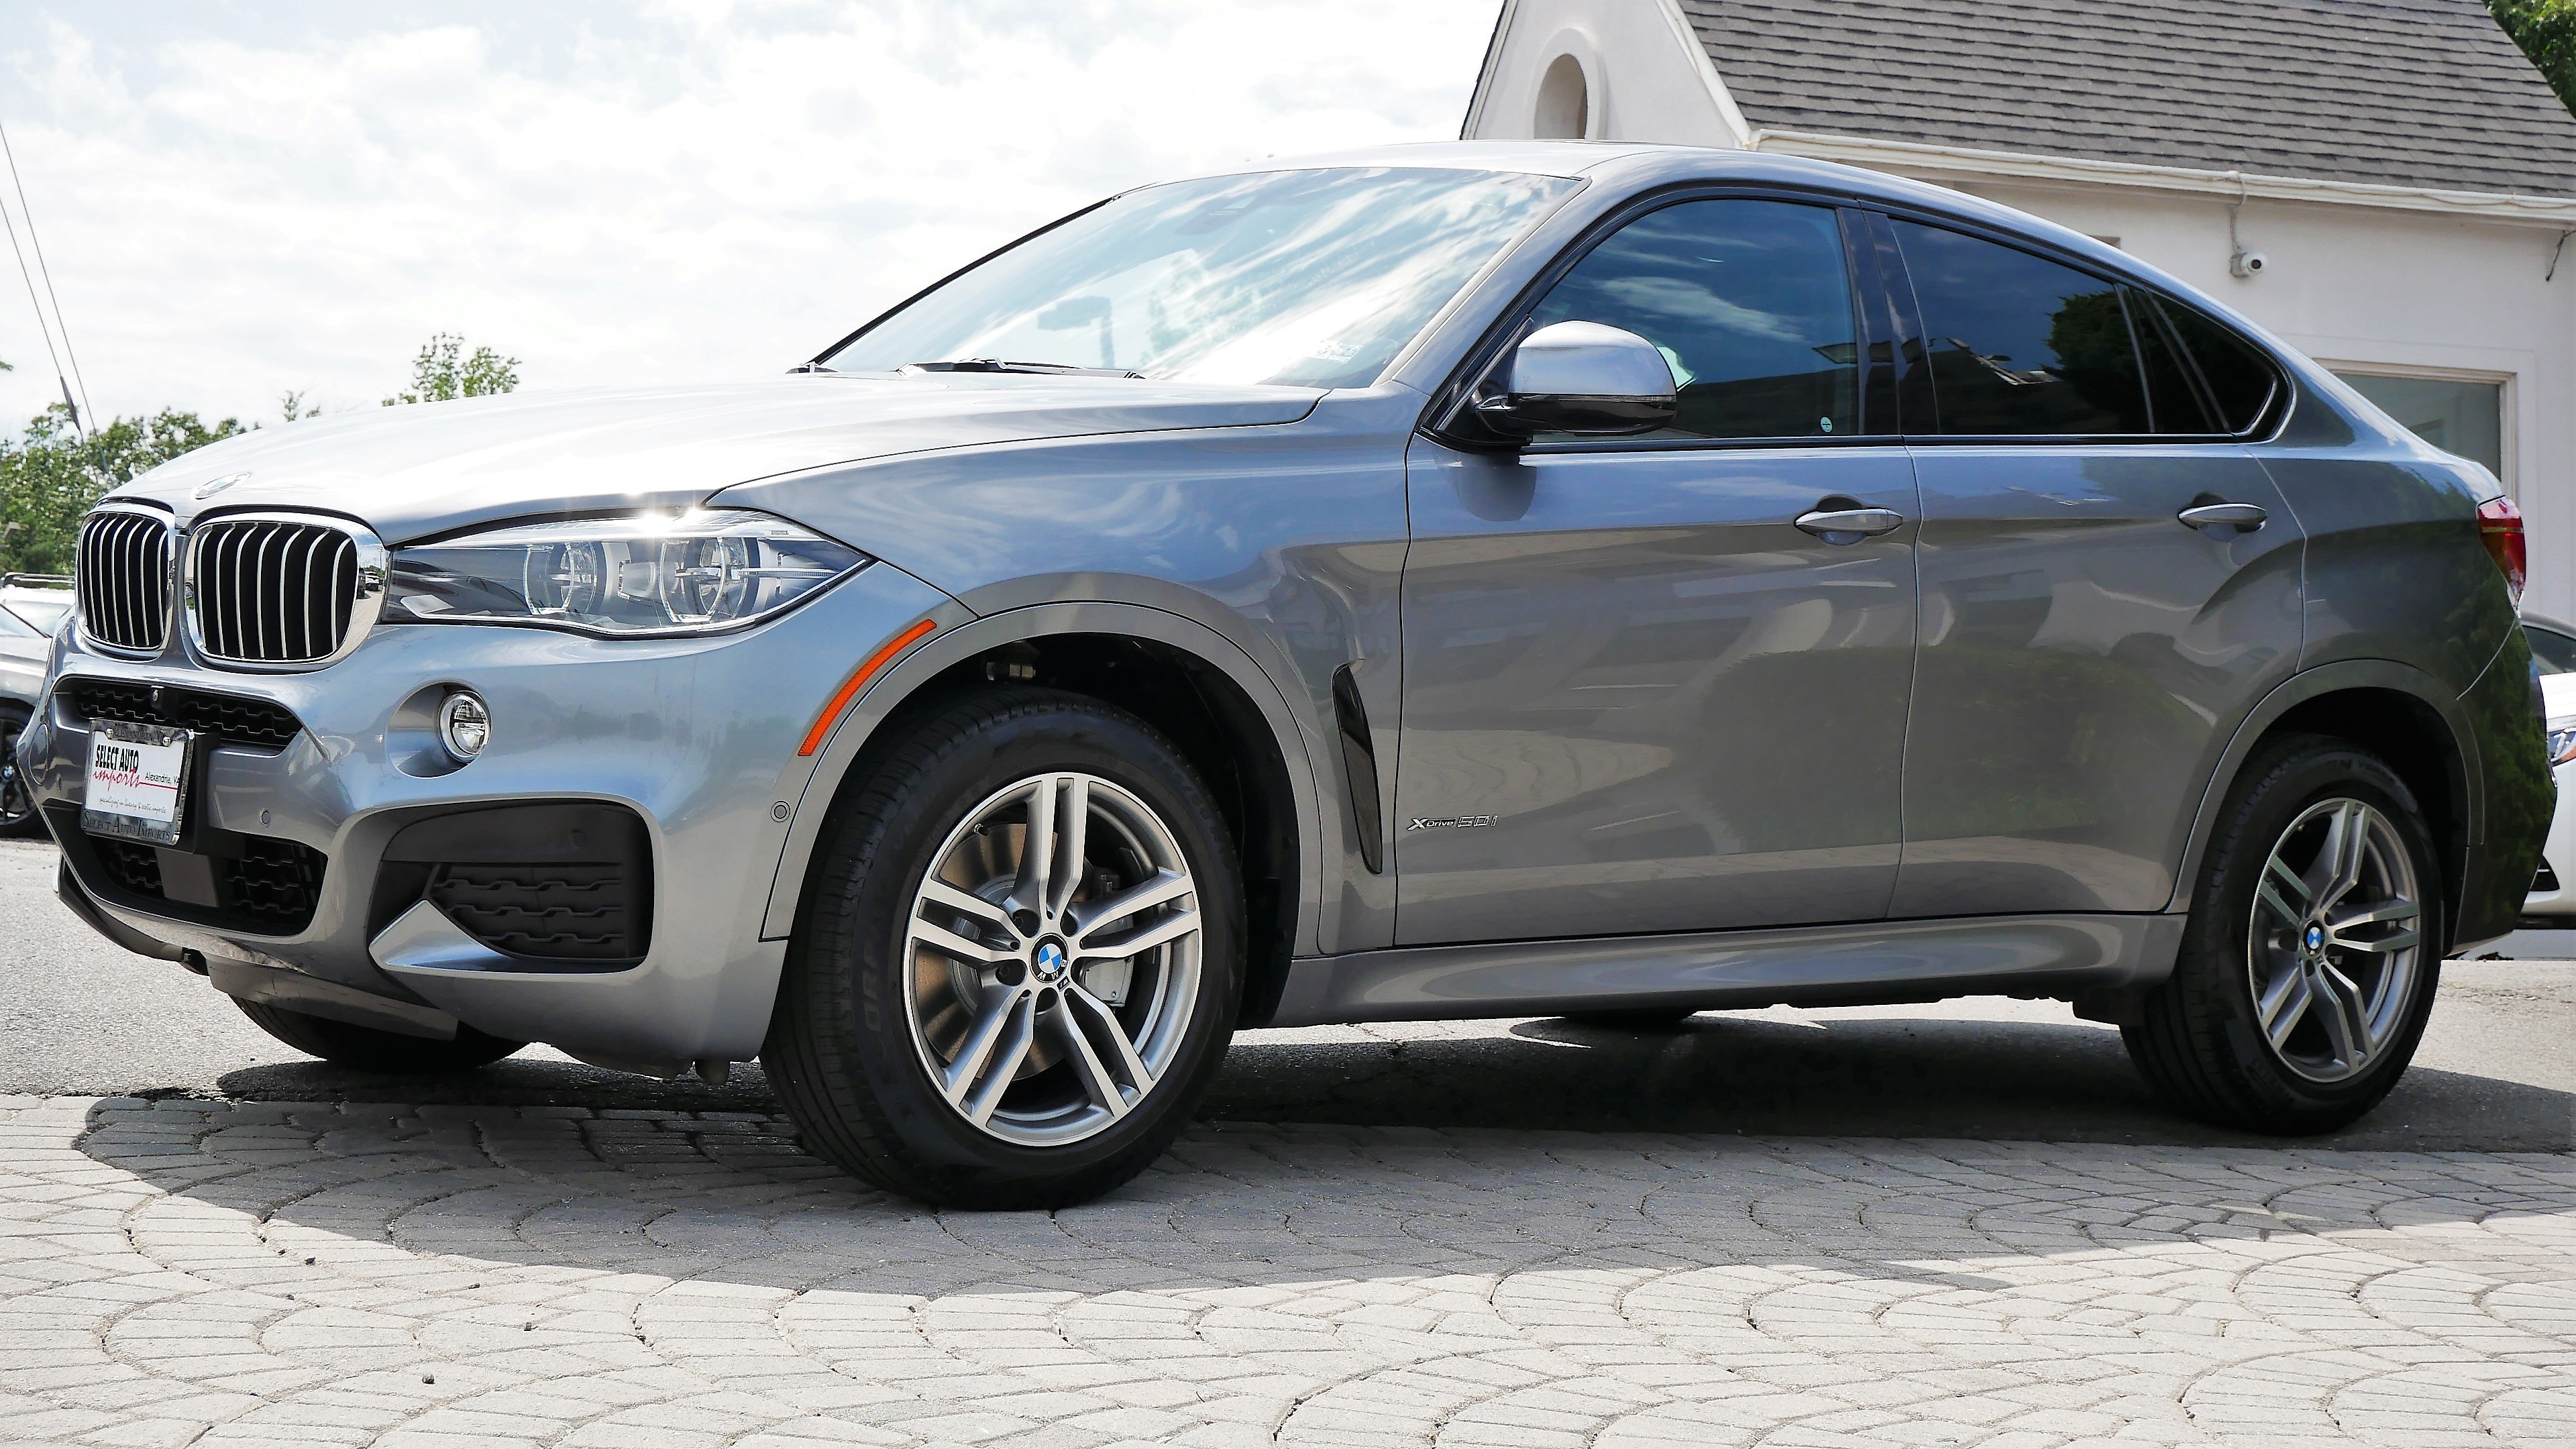 BMW X6, Luxury SUV, Elevated driving position, Striking design, 3840x2160 4K Desktop